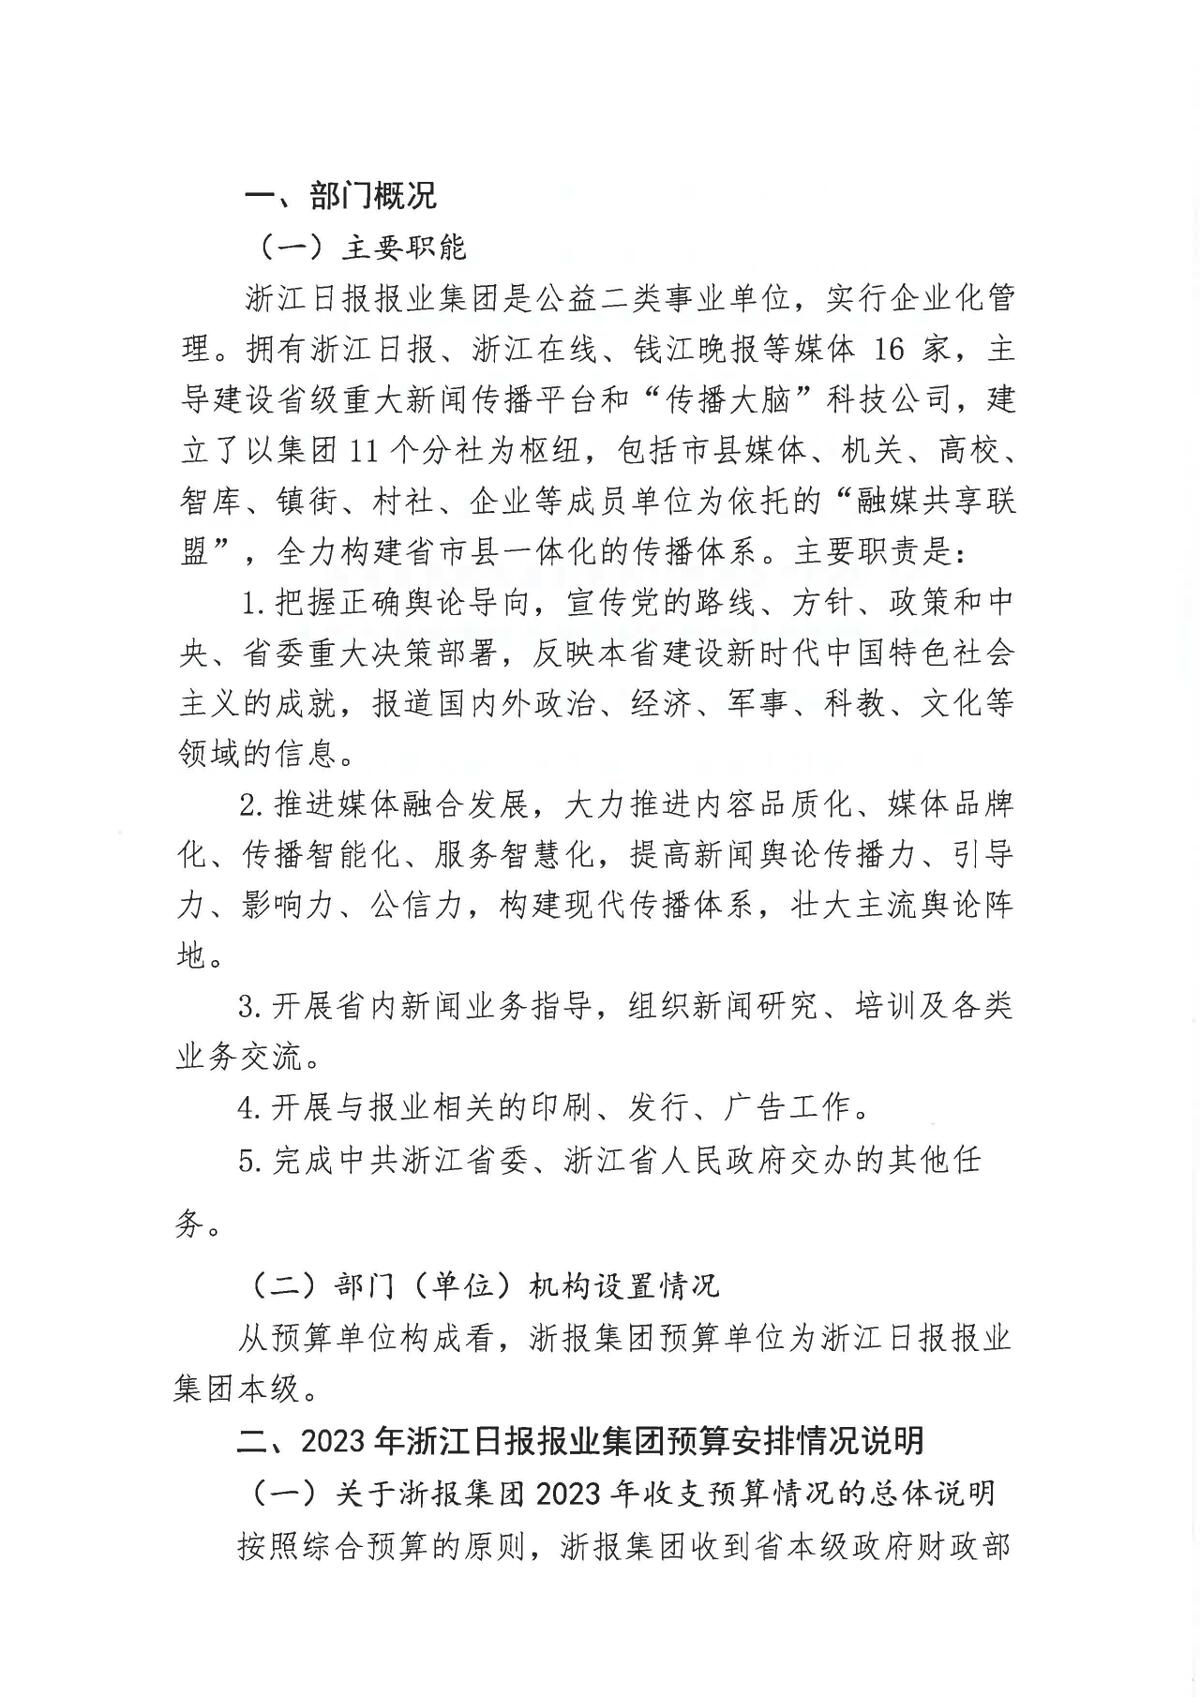 浙江日报报业集团2023年部门预算公开_页面_04.jpg